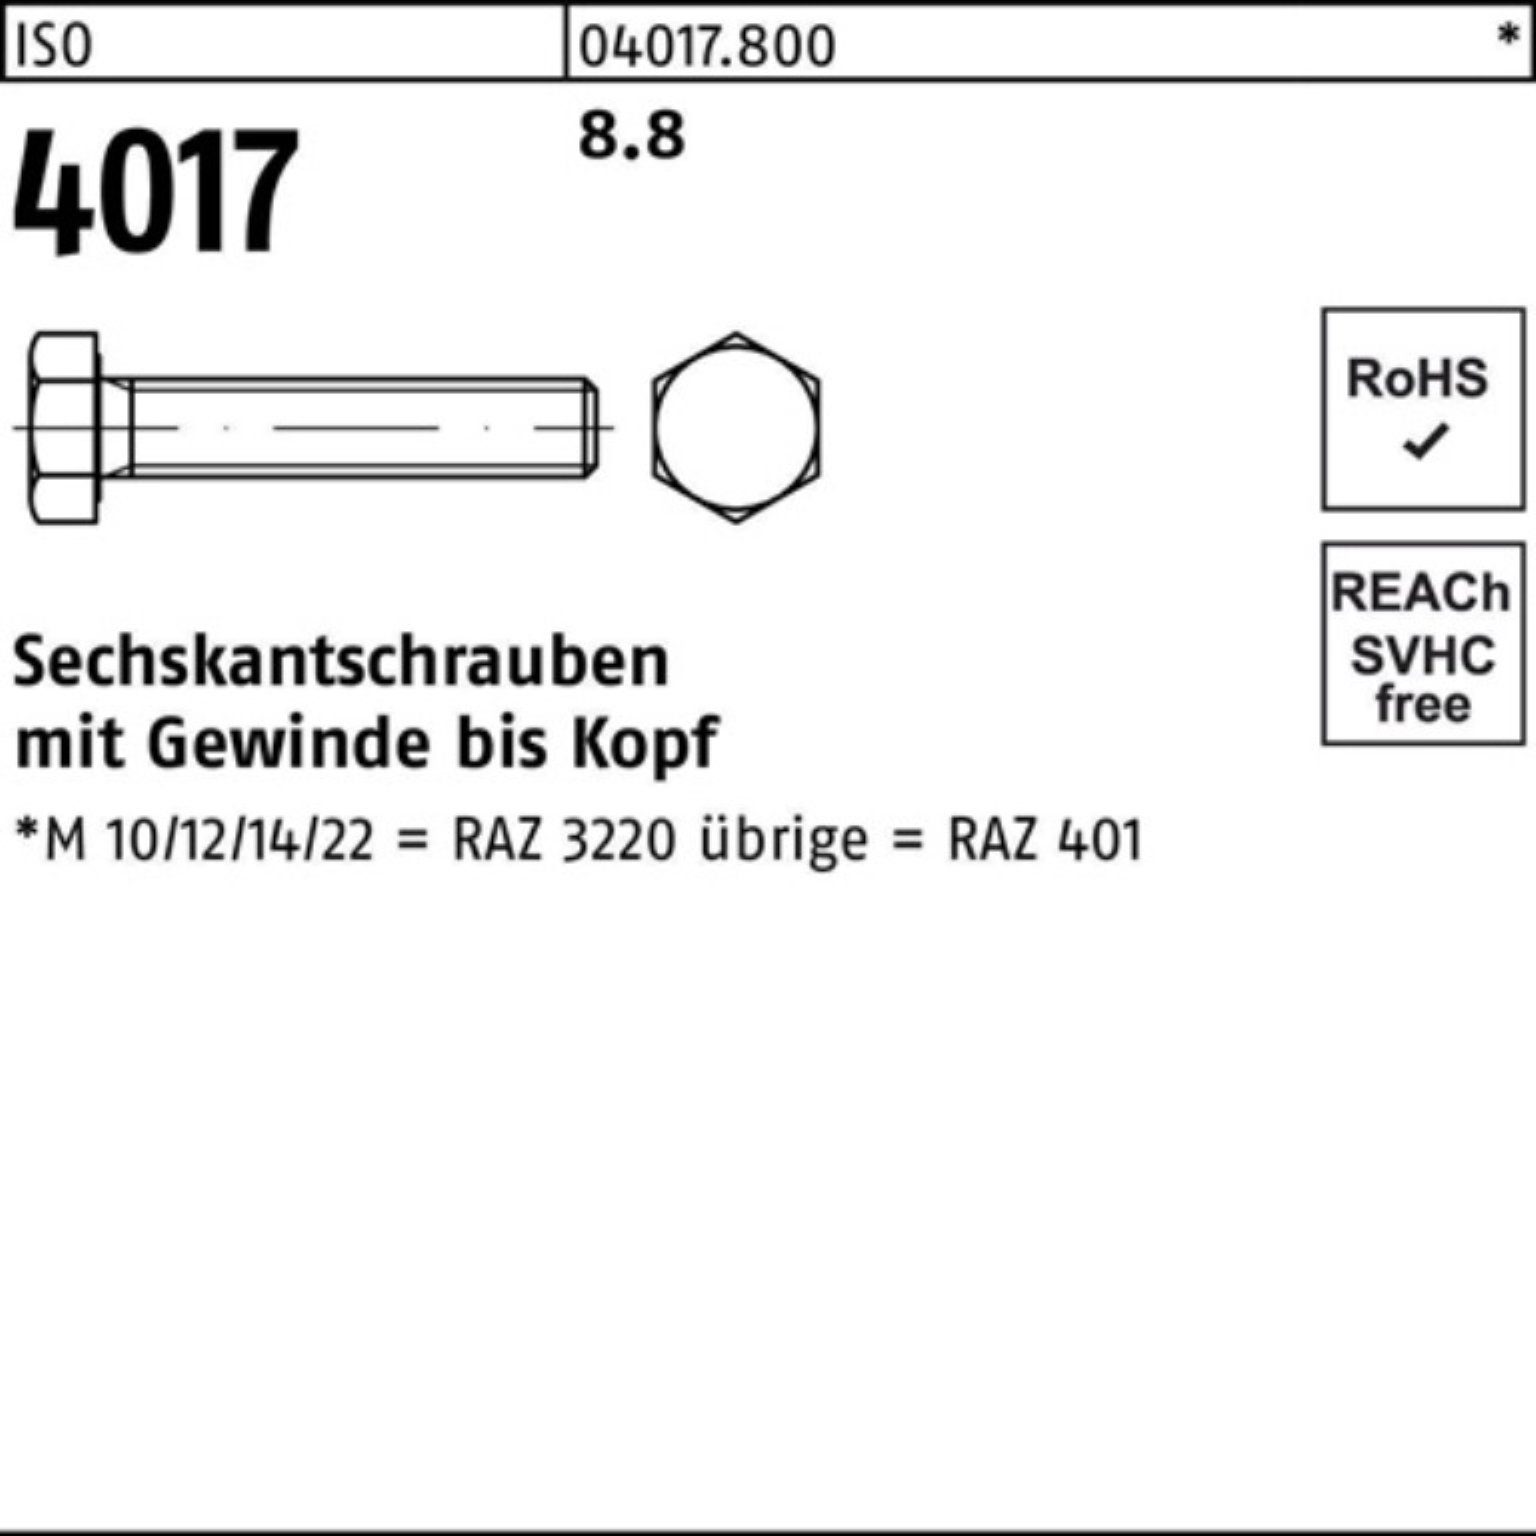 ISO Bufab Pack M4x 8.8 20 Stück VG 4017 500 401 Sechskantschraube Sechskantschraube 500er ISO